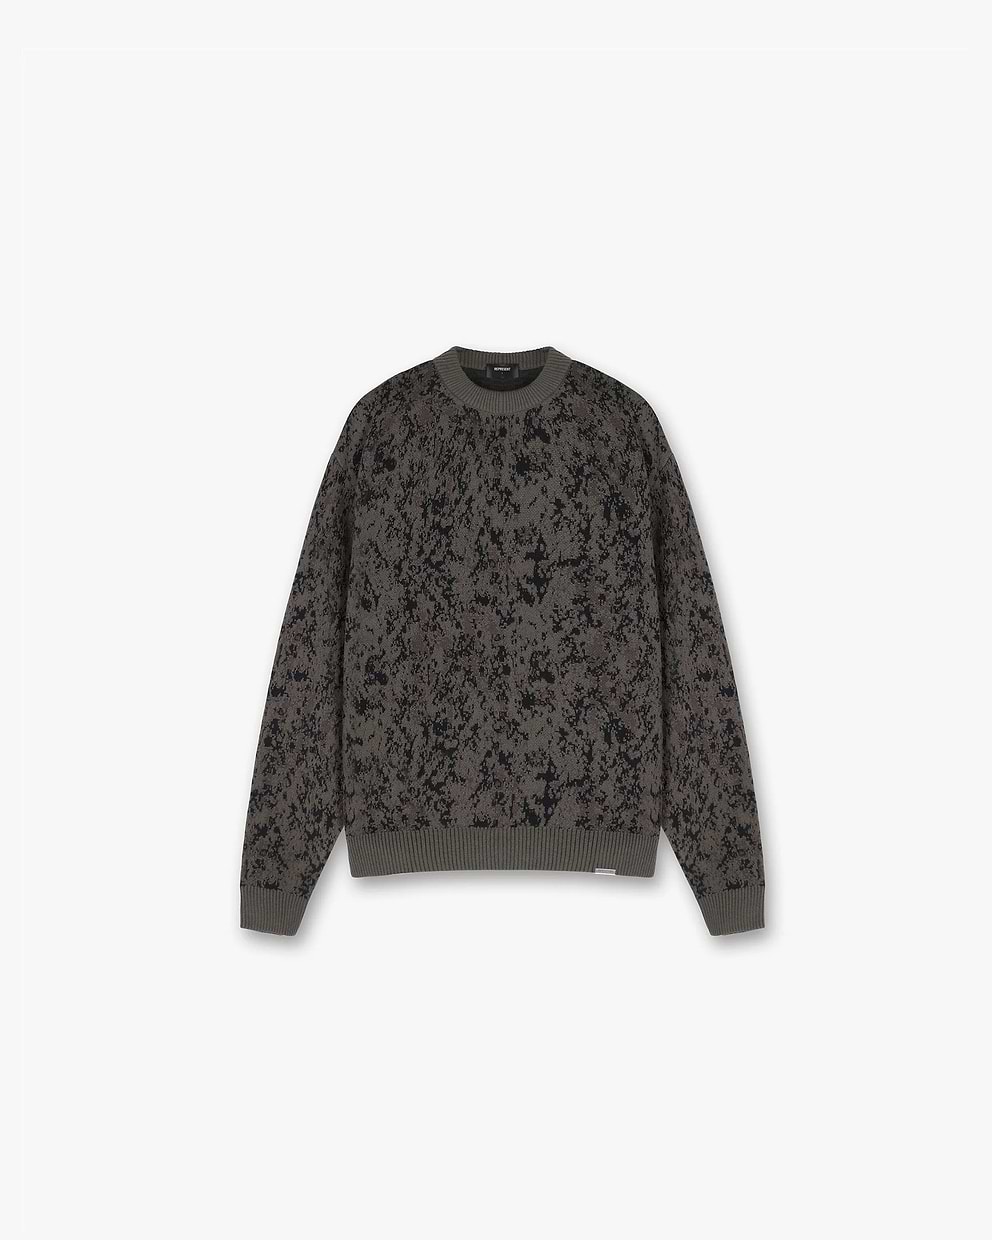 Camo Jacquard Sweater | REPRESENT CLO